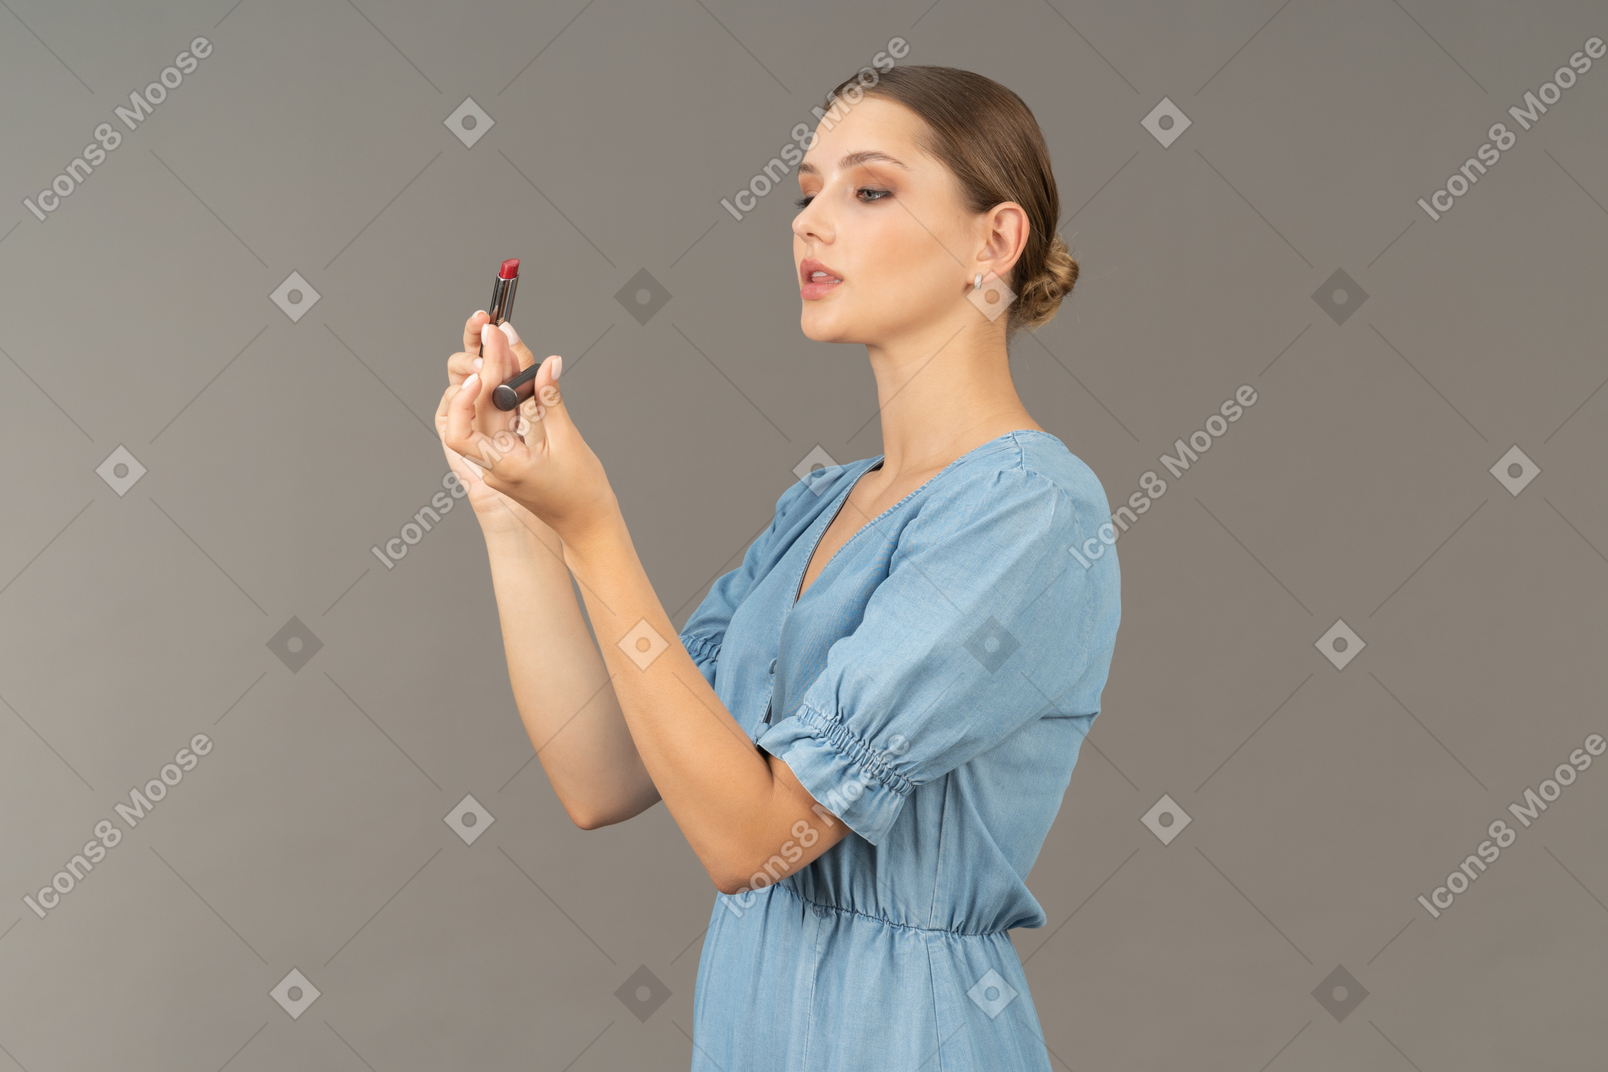 Vue de trois quarts d'une jeune femme en robe bleue ouvrant le rouge à lèvres